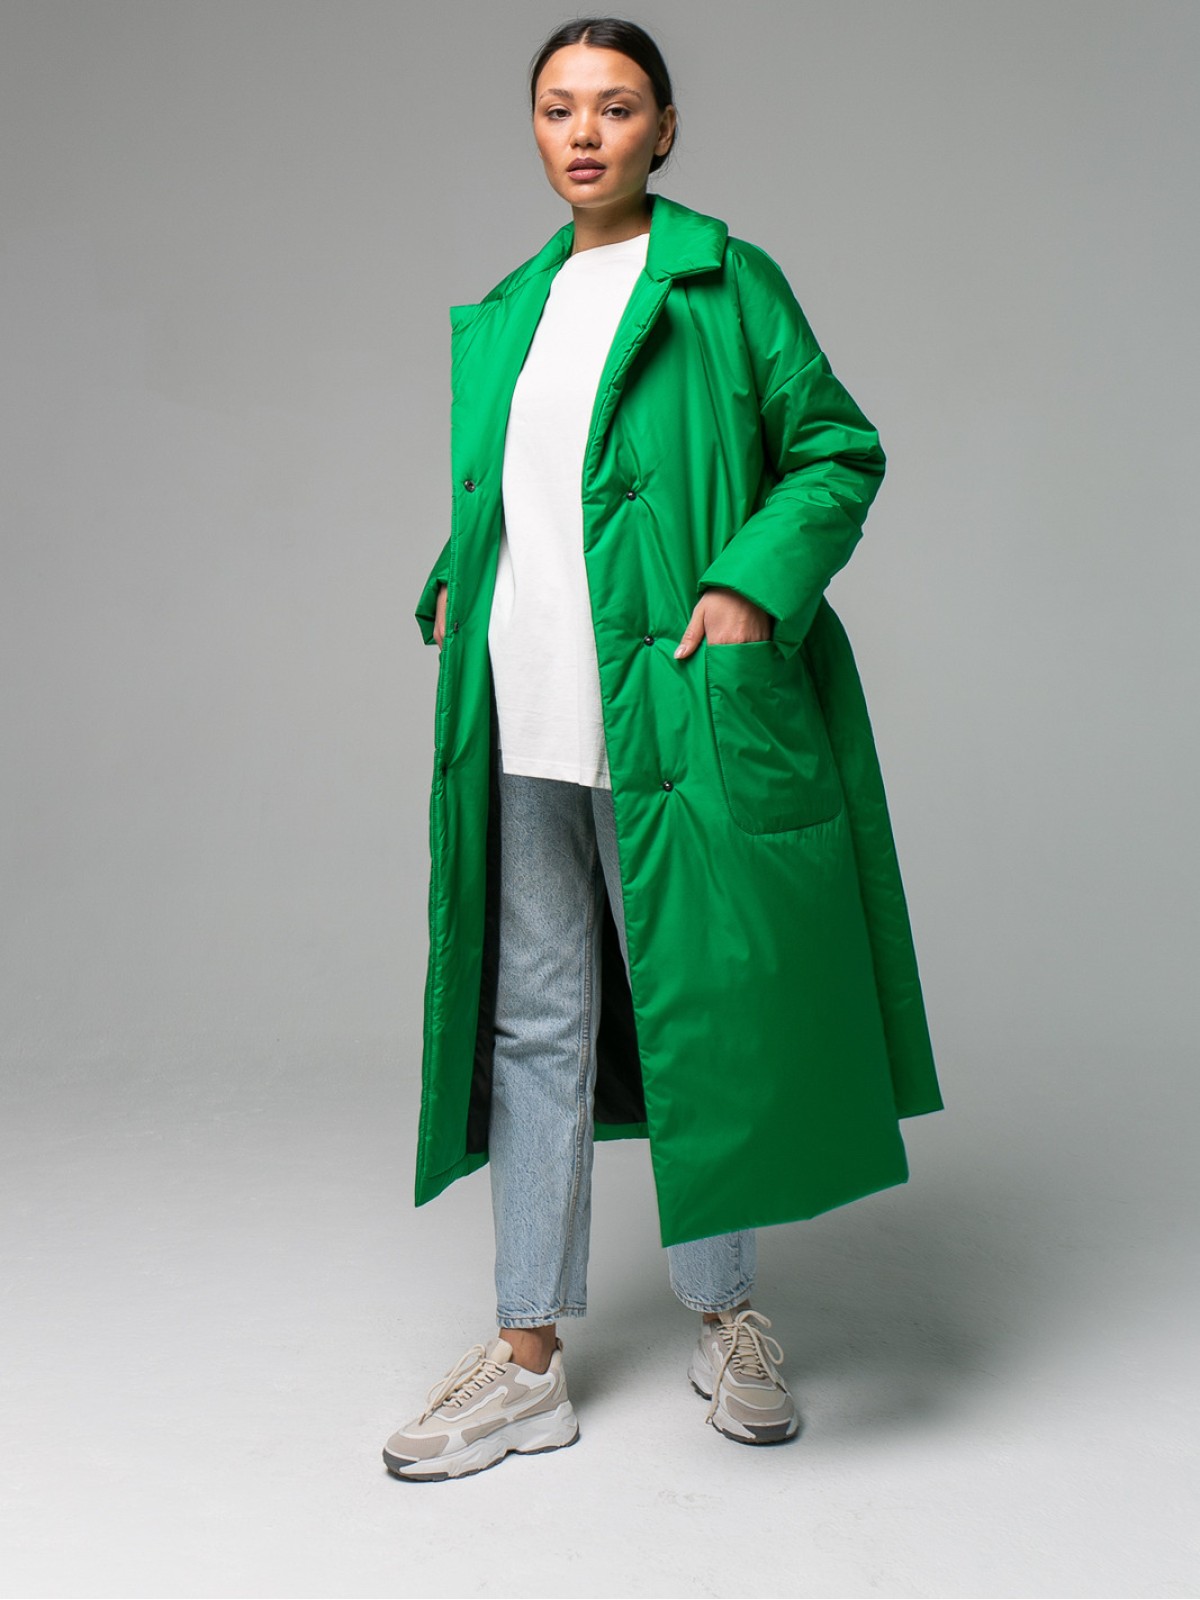 Пальто из плащевой ткани Greeny (Ярко-зеленый)